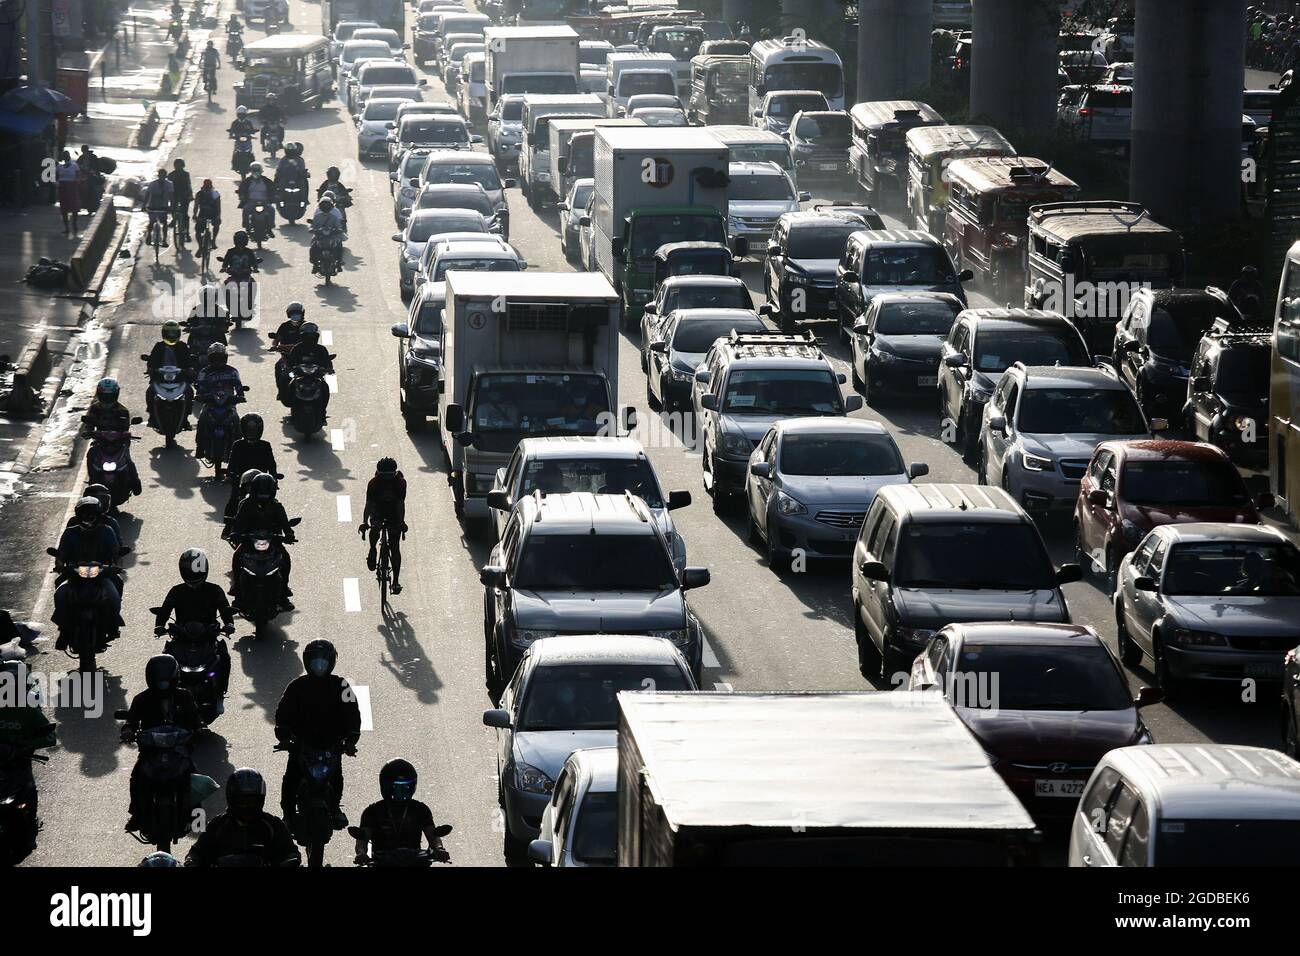 Polizisten mit Schutzausrüstung inspizieren Motorradfahrer an einem Kontrollpunkt während einer strengeren Sperre als Vorsichtsmaßnahme gegen die Ausbreitung der neuen Coronavirus-Krankheit am Stadtrand von Marikina City, Philippinen. Stockfoto